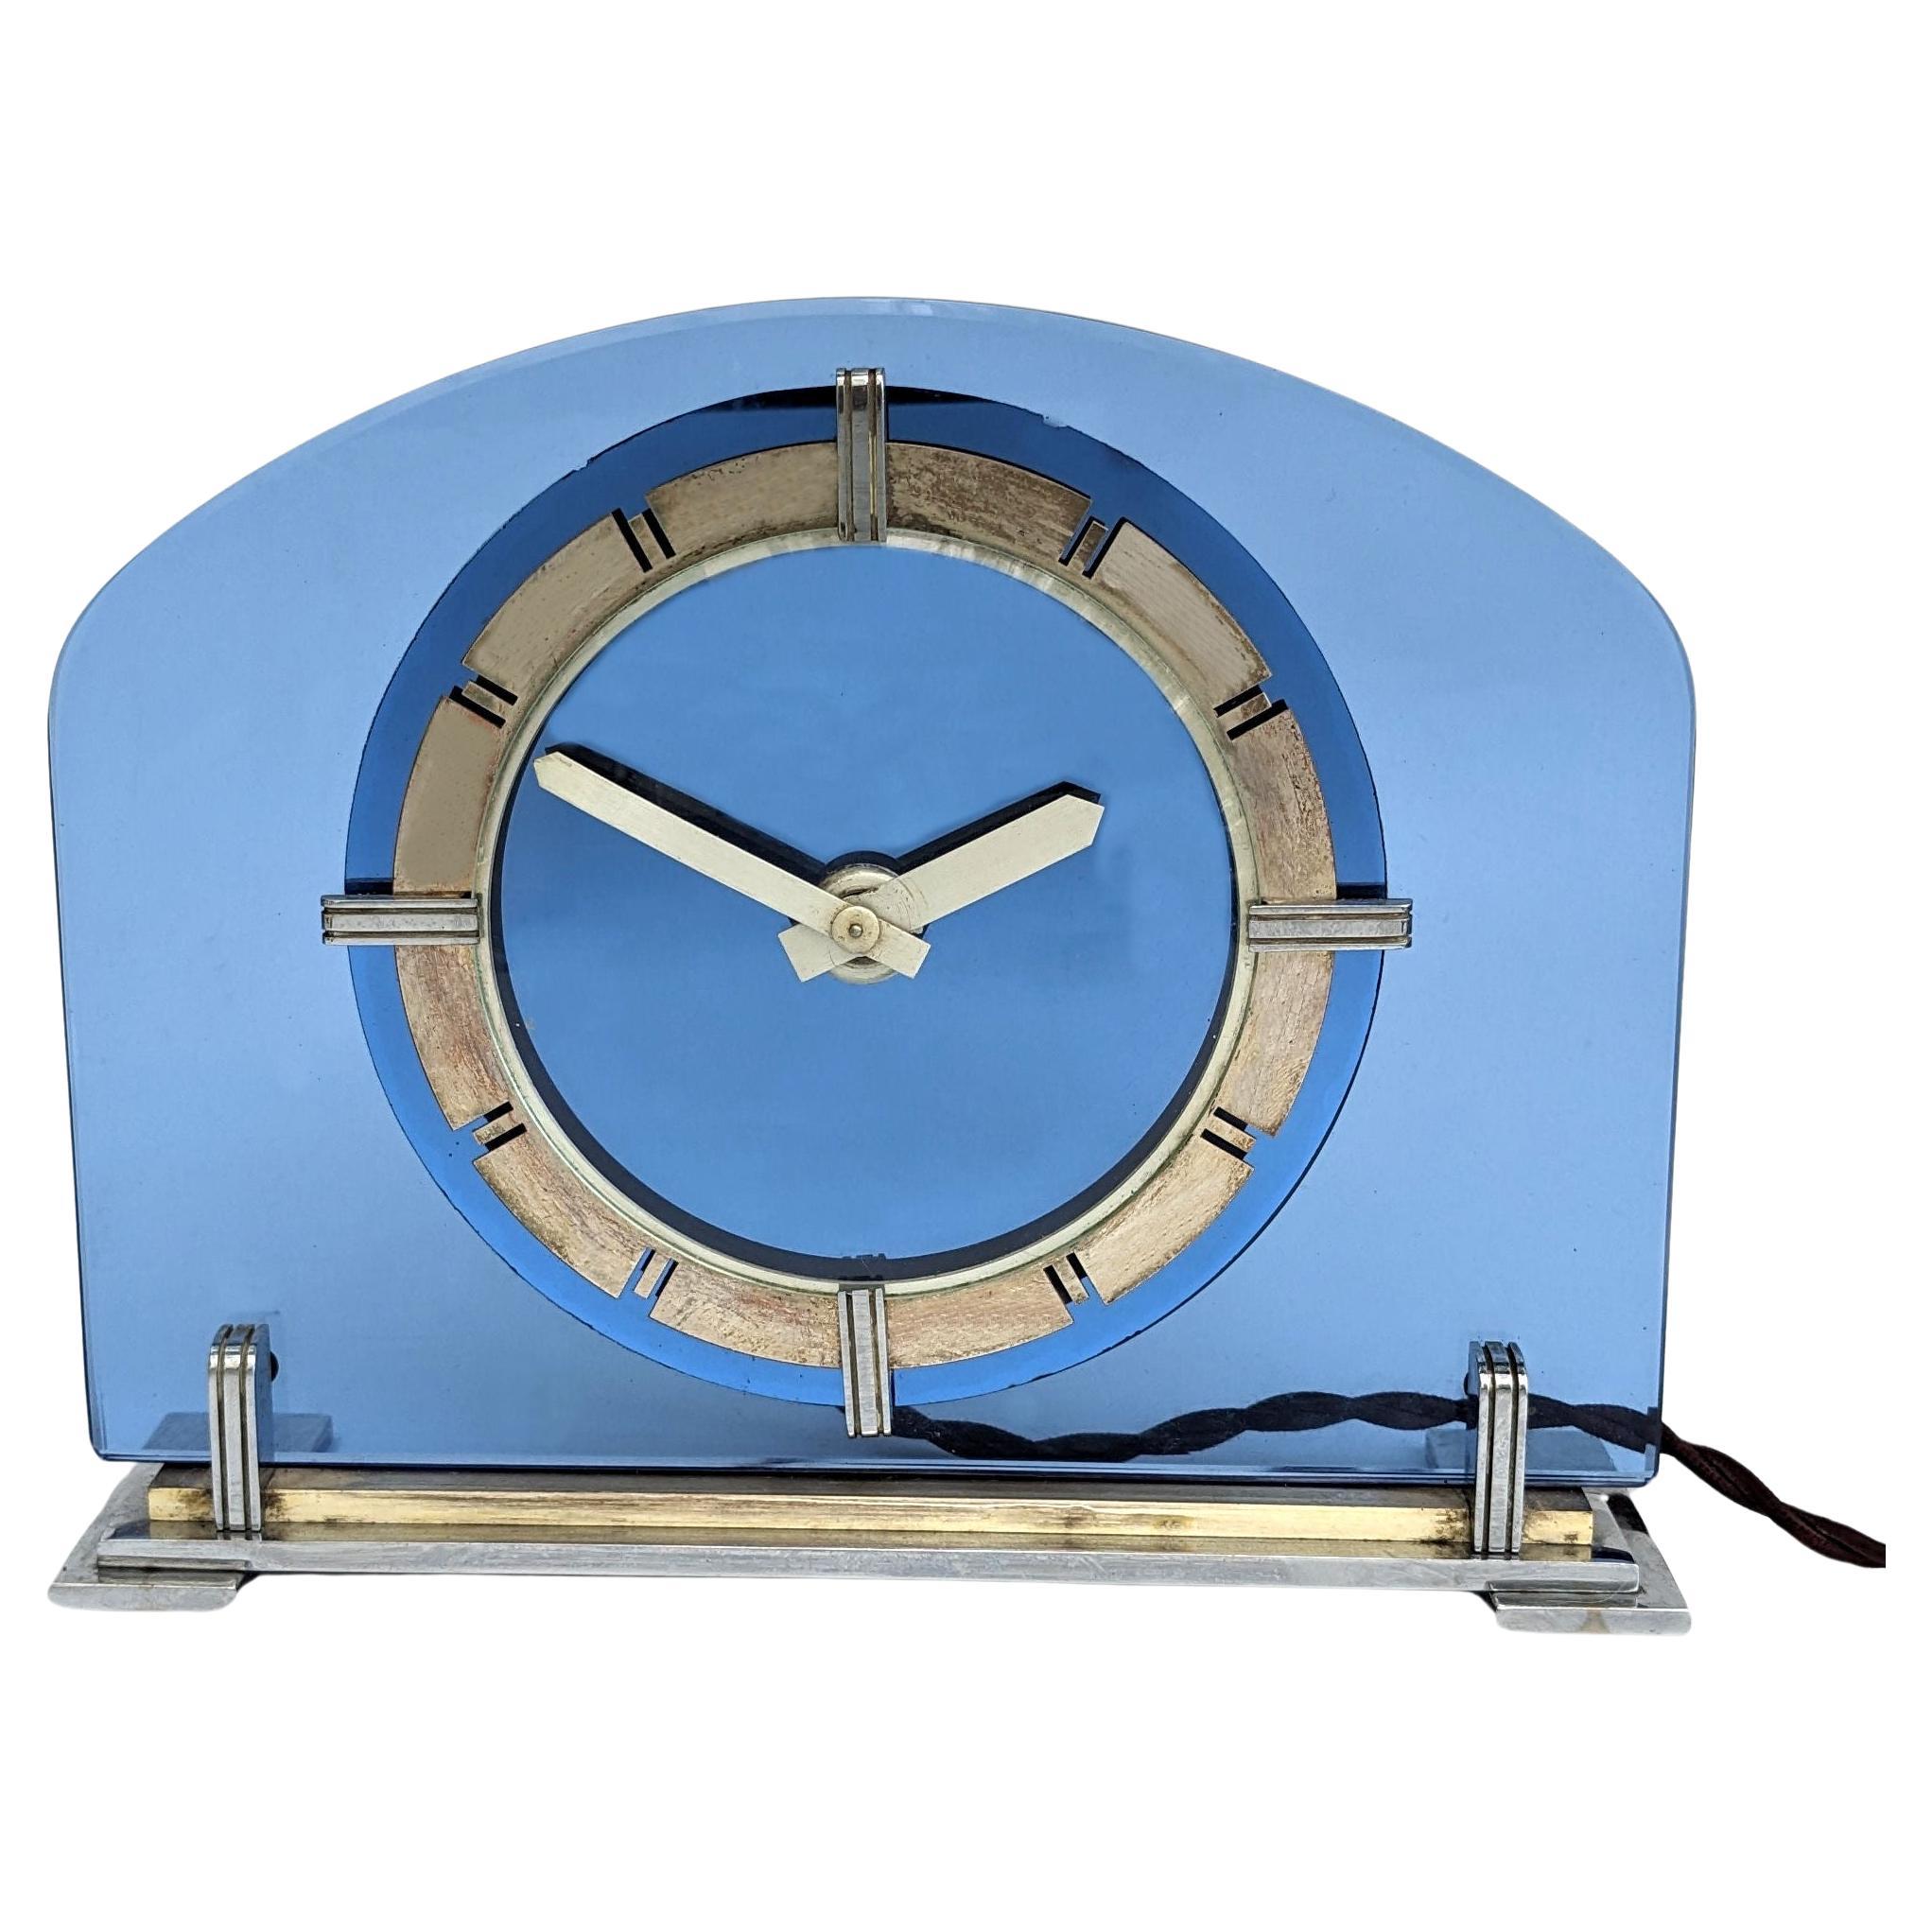 Grande et rare horloge de manteau électrique Art Déco en verre bleu et laiton. Cette horloge est un vrai délice. Cette horloge glamour est dotée d'une lunette en laiton avec des chiffres ajourés et d'un cadran en verre bleu miroité. L'horloge, comme